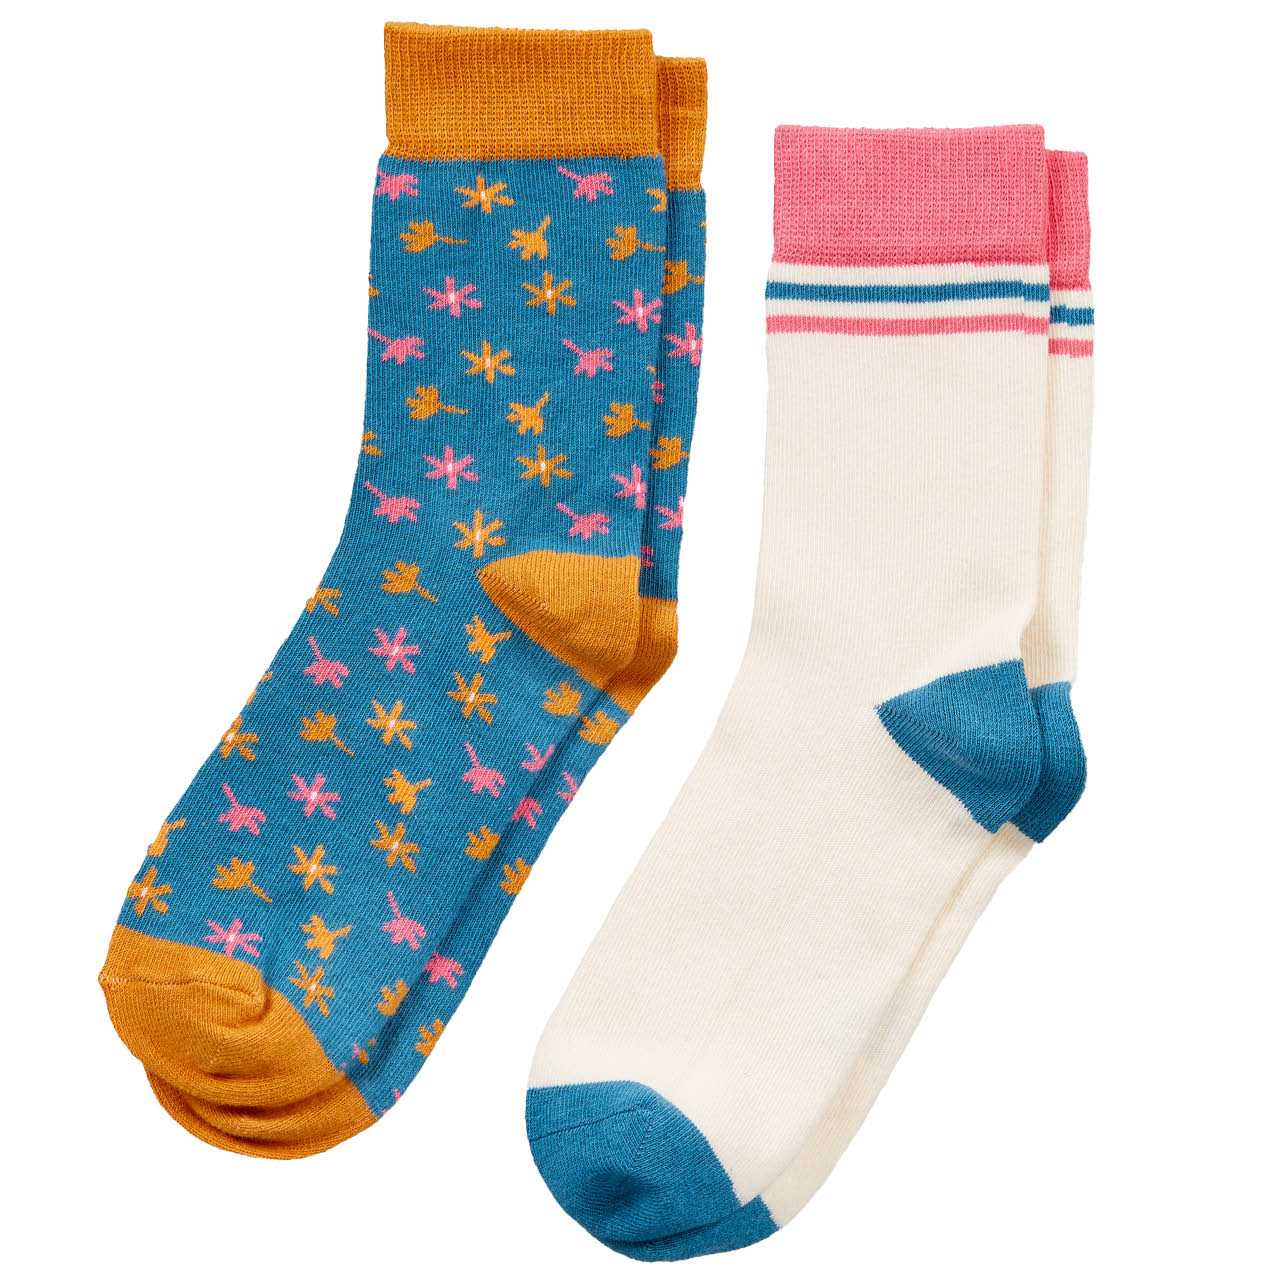 Kinder Socken 2er Pack Blumen blau pink, creme